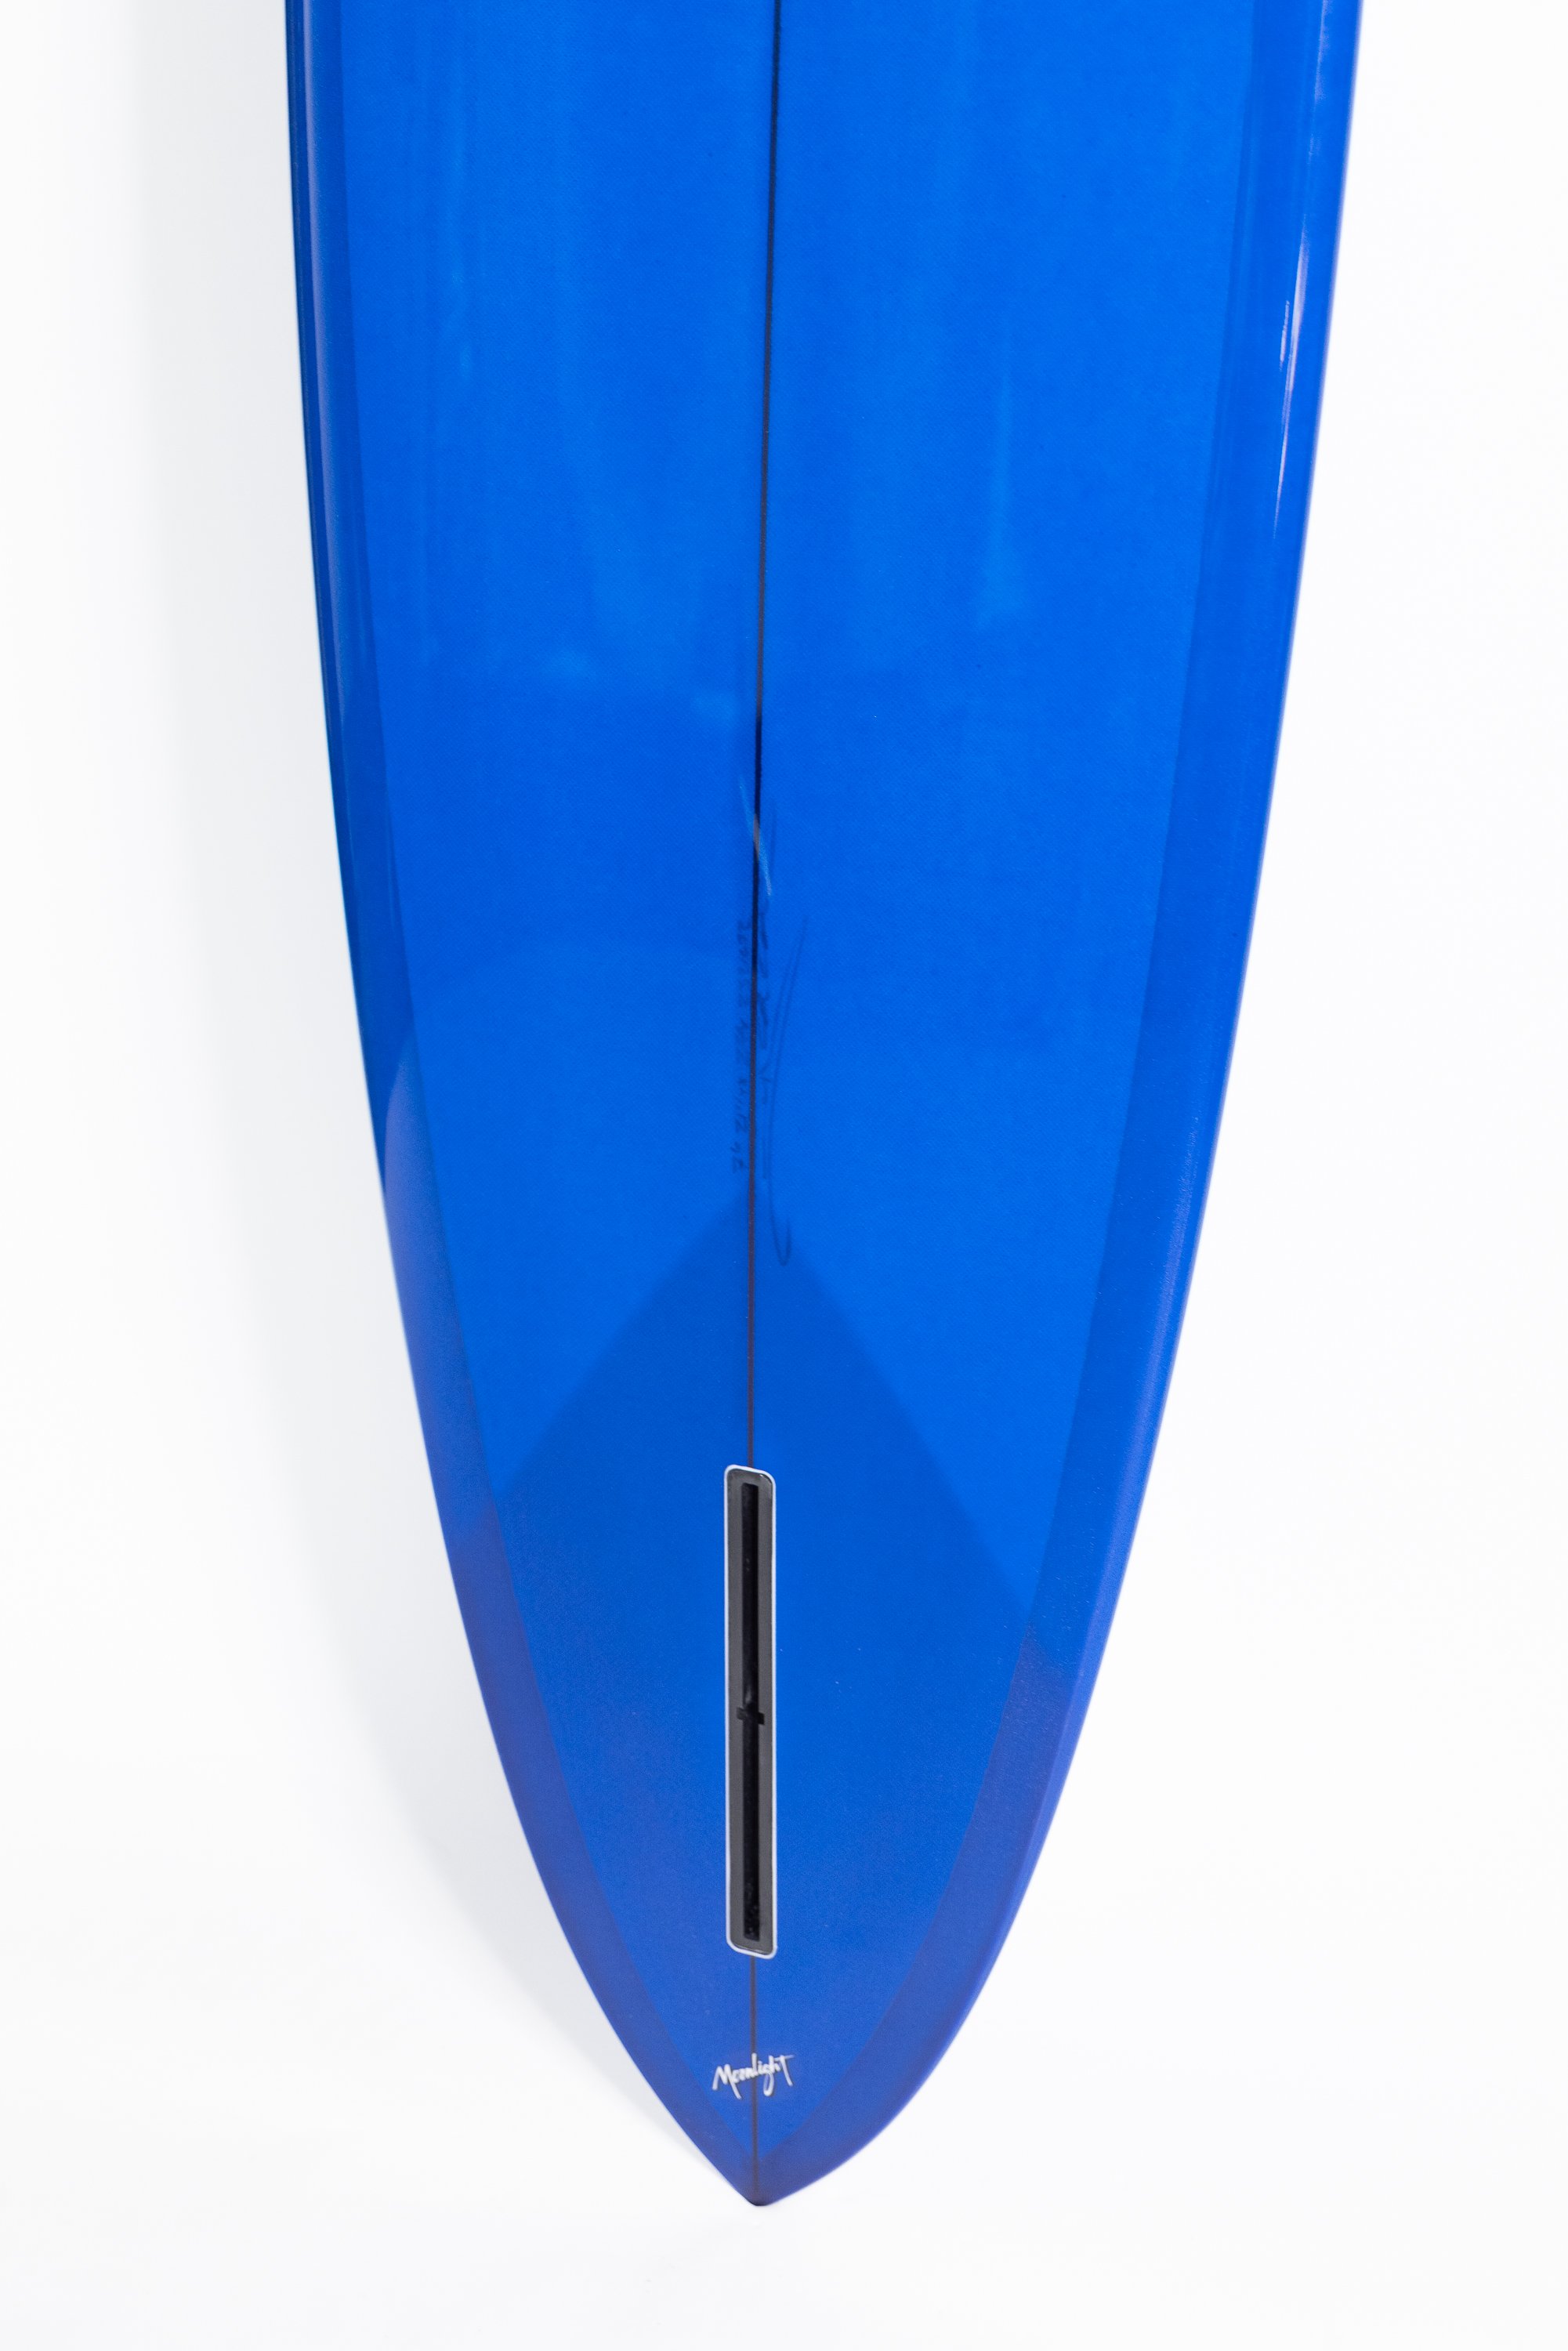 2023-Christenson Surfboards-158.jpg